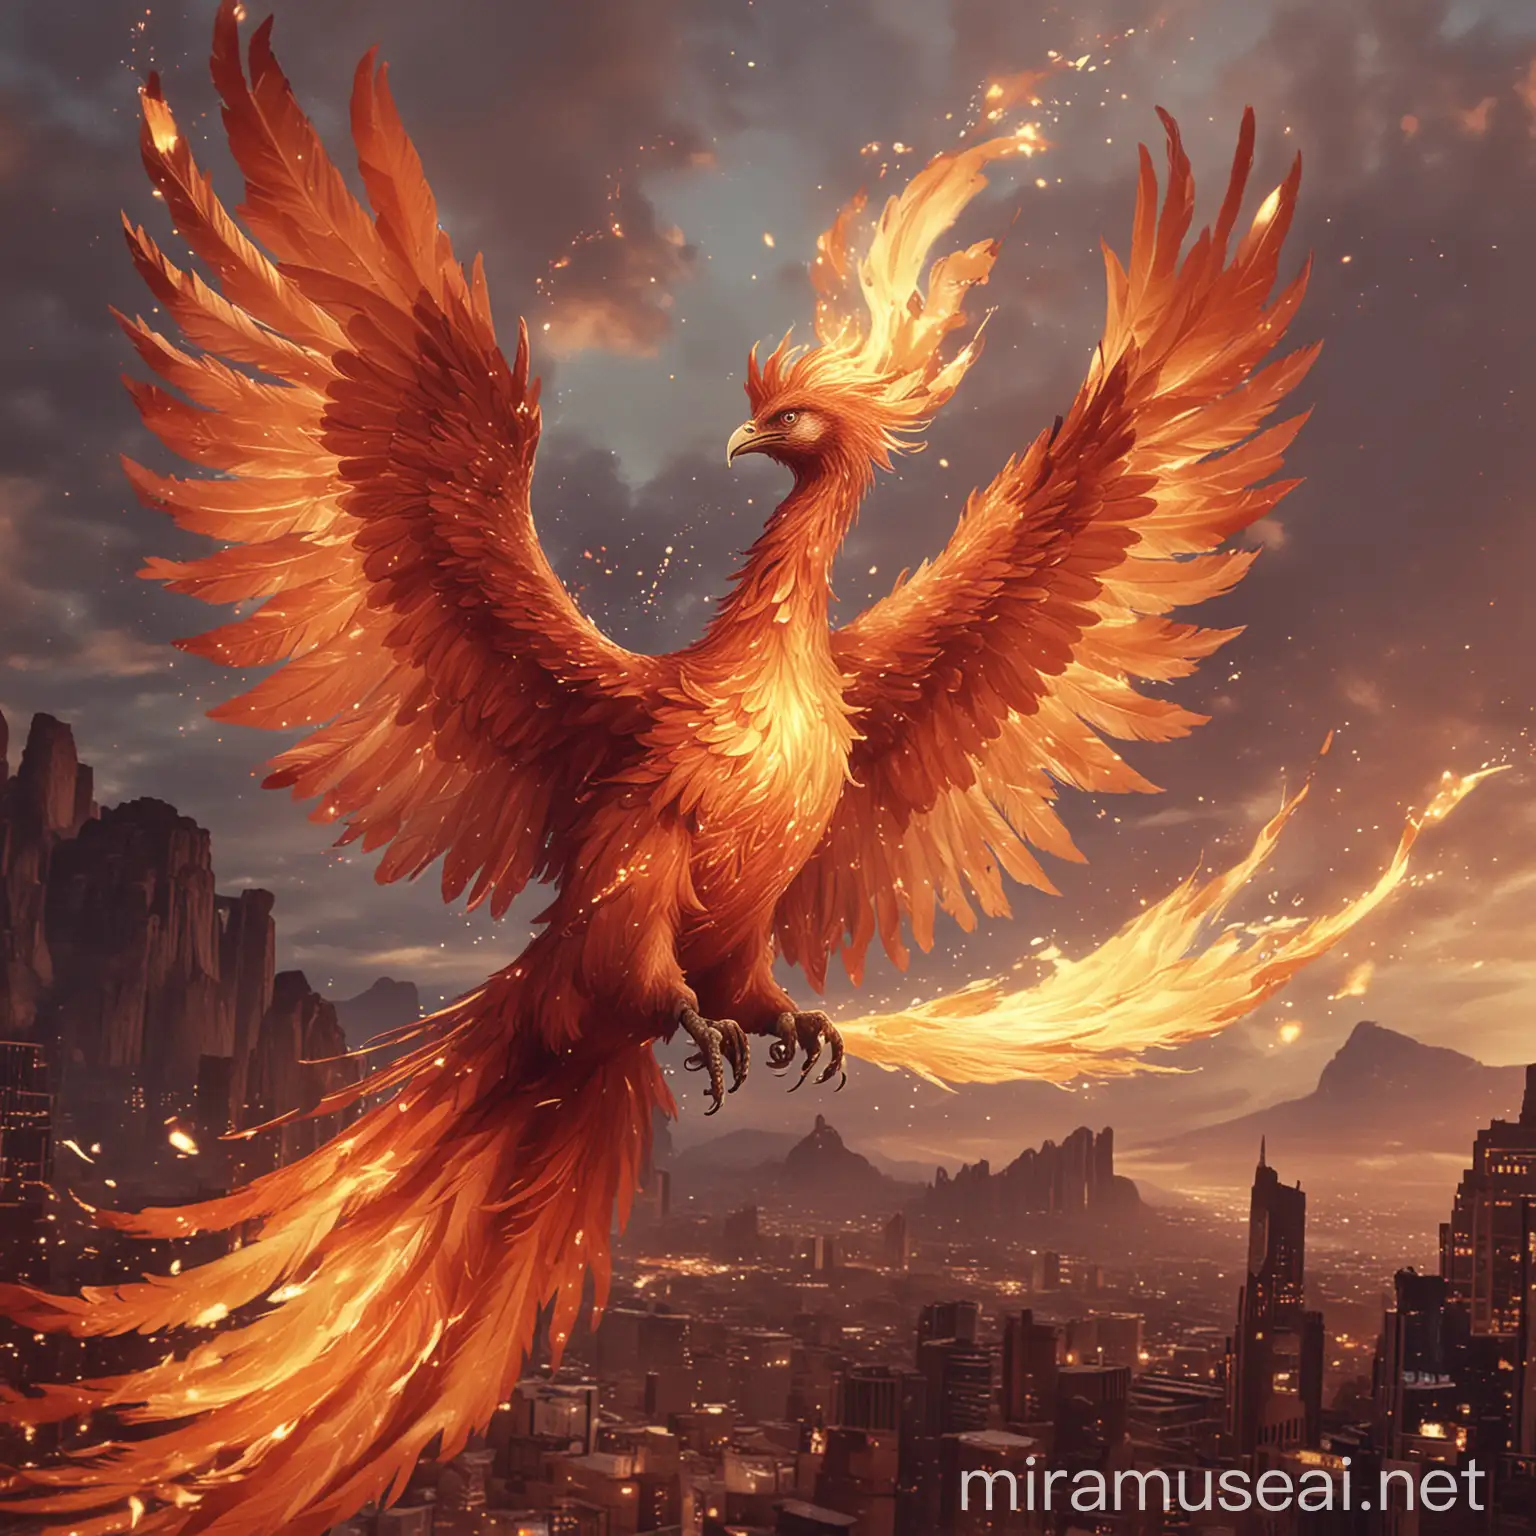 Majestic Phoenix Soaring in Fiery Skies